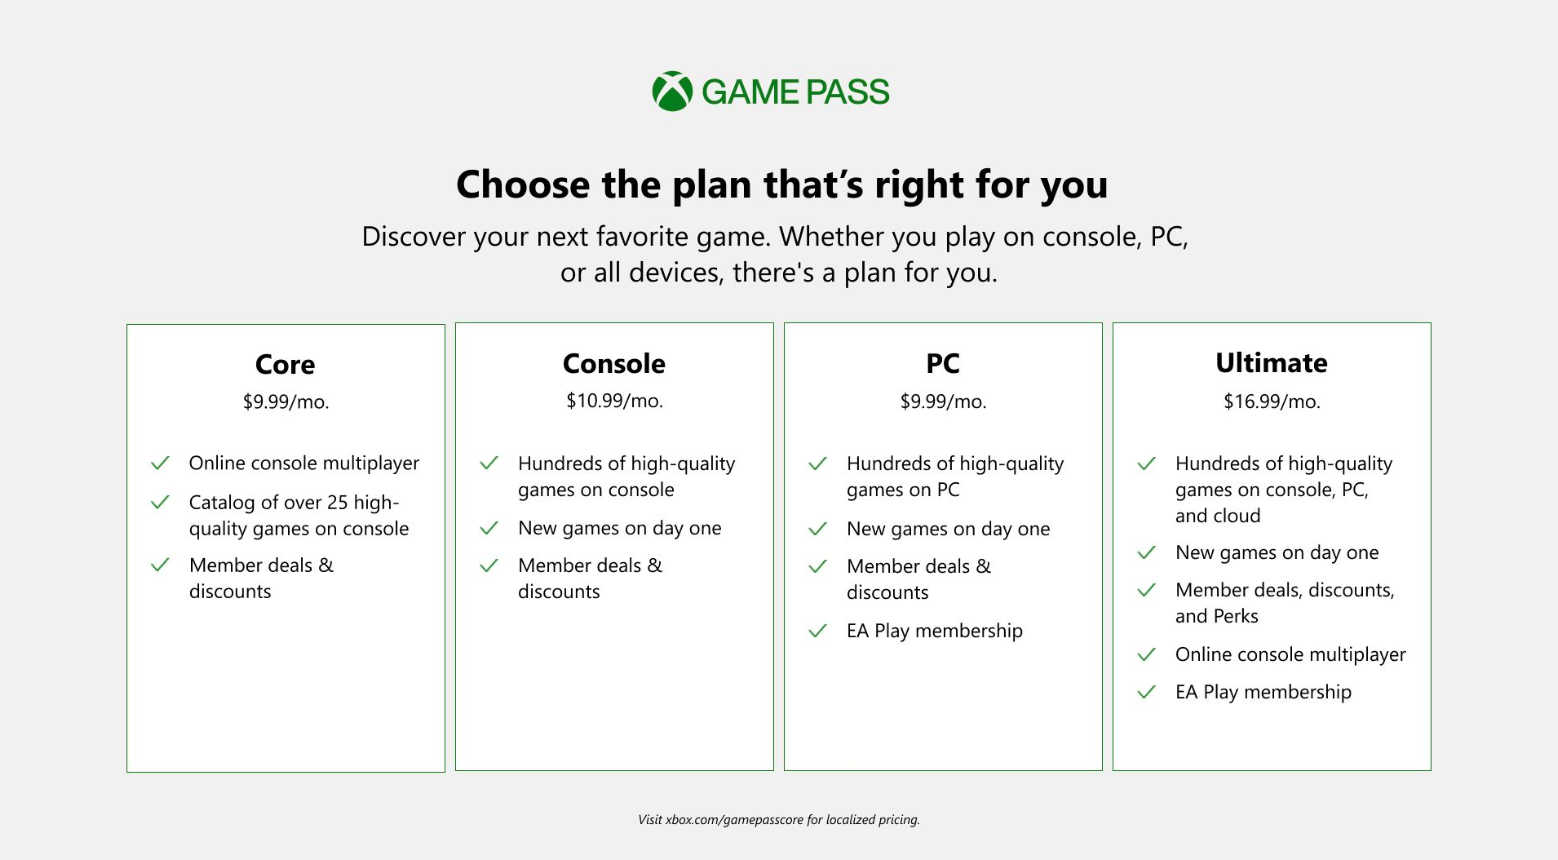 Xbox Game Pass Price